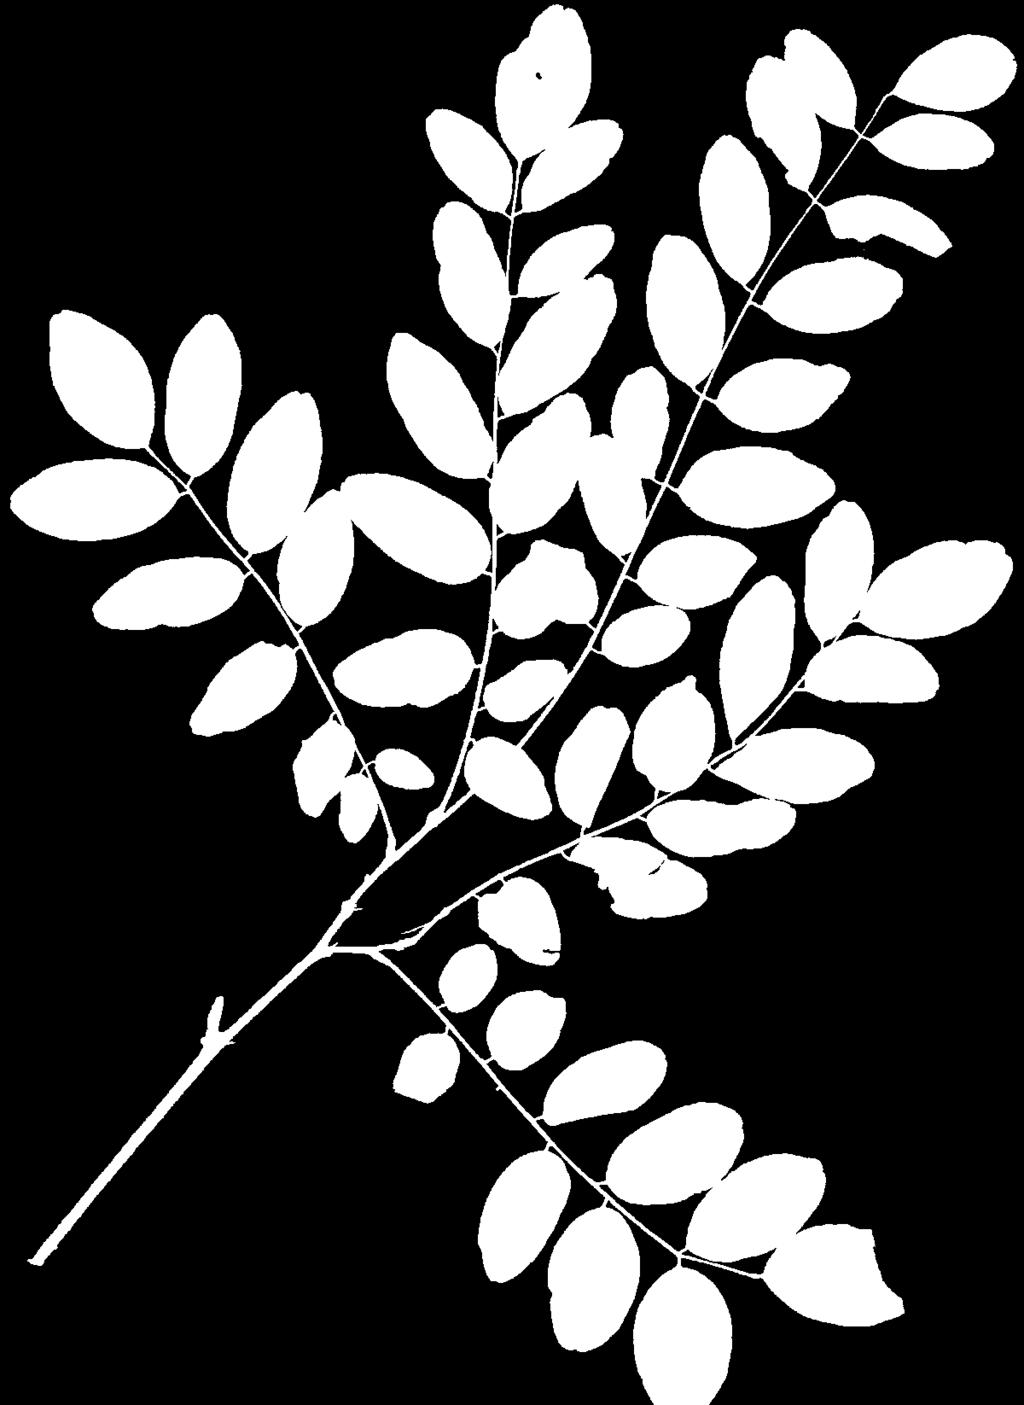 Robinia liście podzielone, odcinki